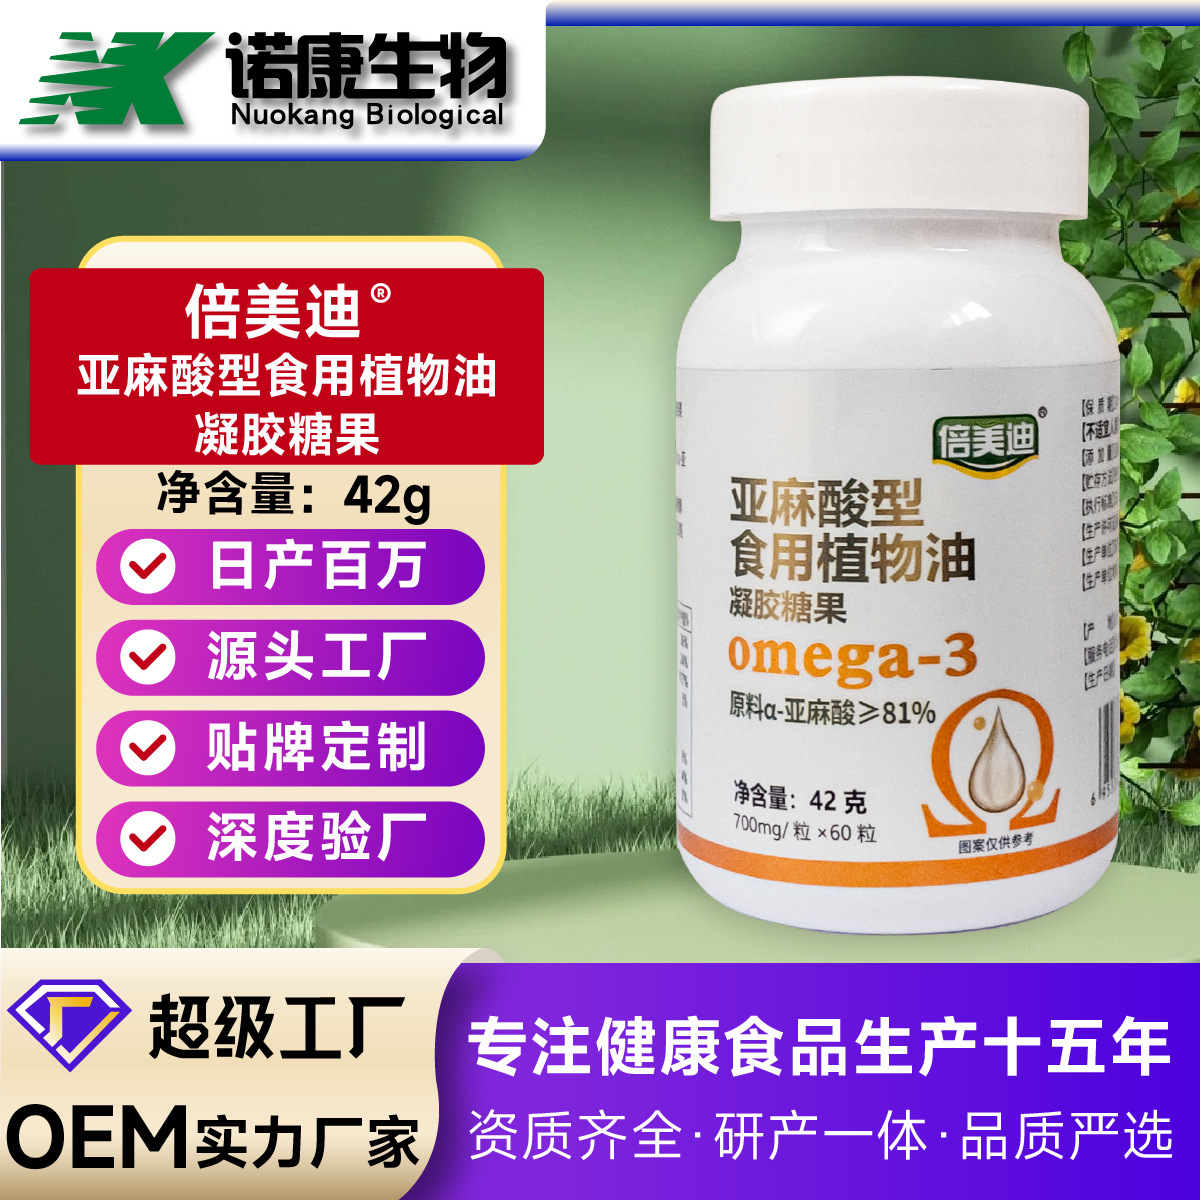 定制oem贴牌 欧米伽3亚麻酸软胶囊藻油中老年跨境电商外贸代加工